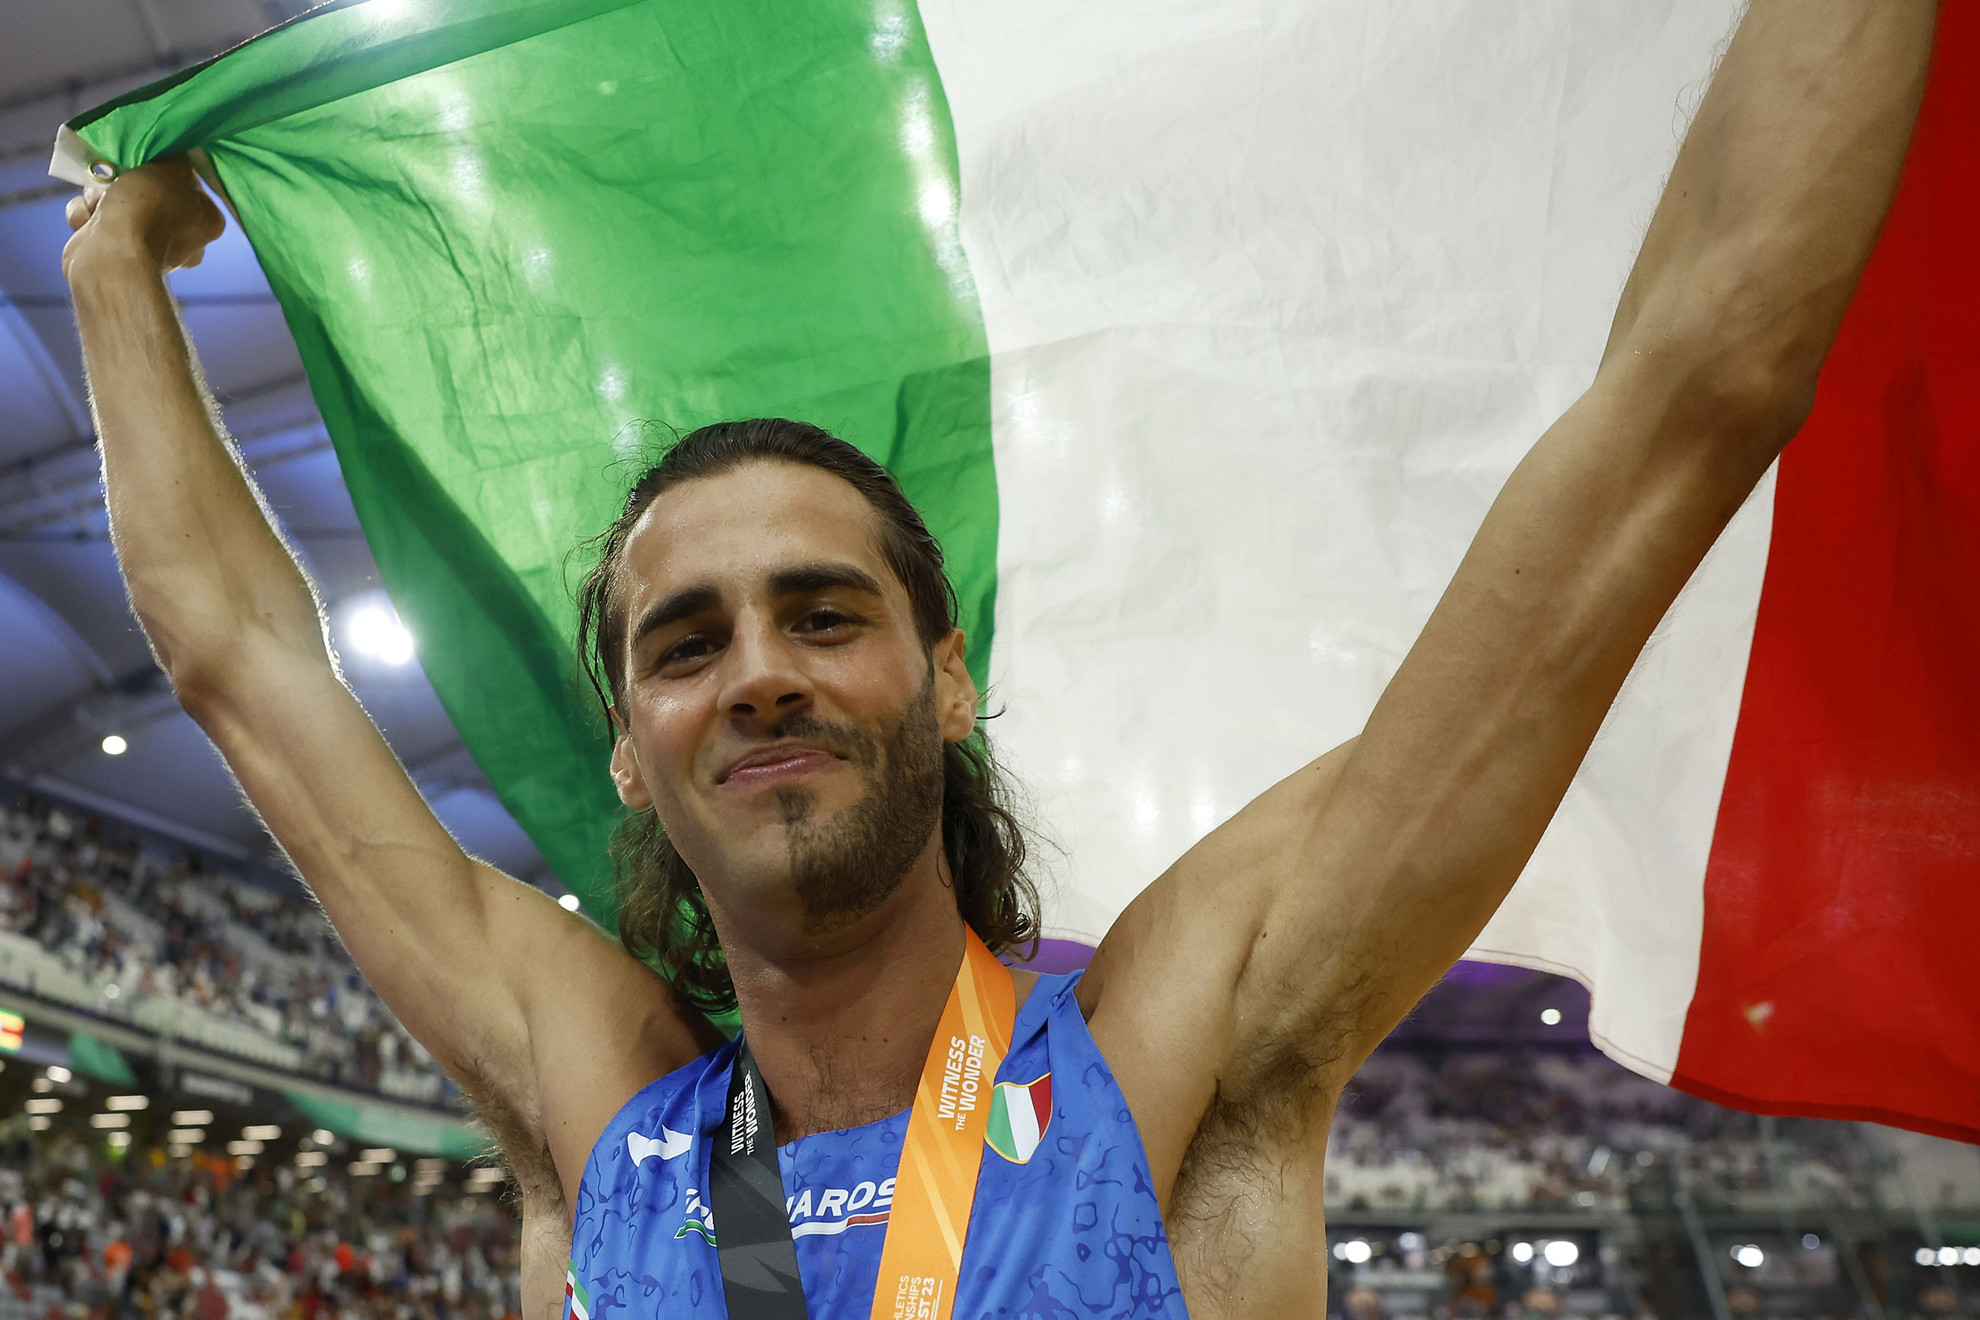 Gianmarco Tamberi különleges megjelenése már megszokott, Budapesten világbajnok lett